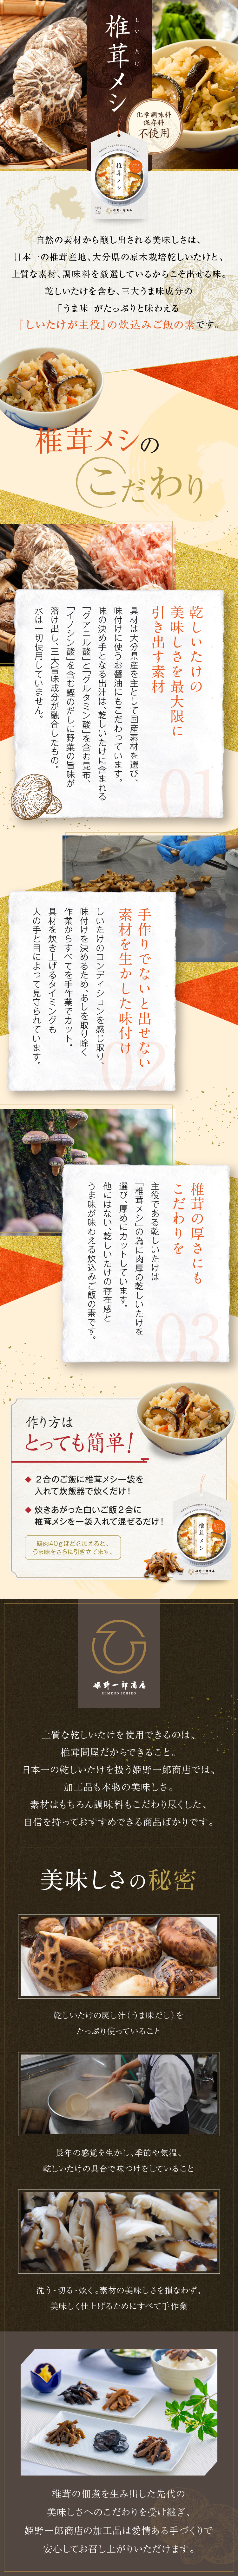 炊込みご飯の素「椎茸メシ」_sp_1